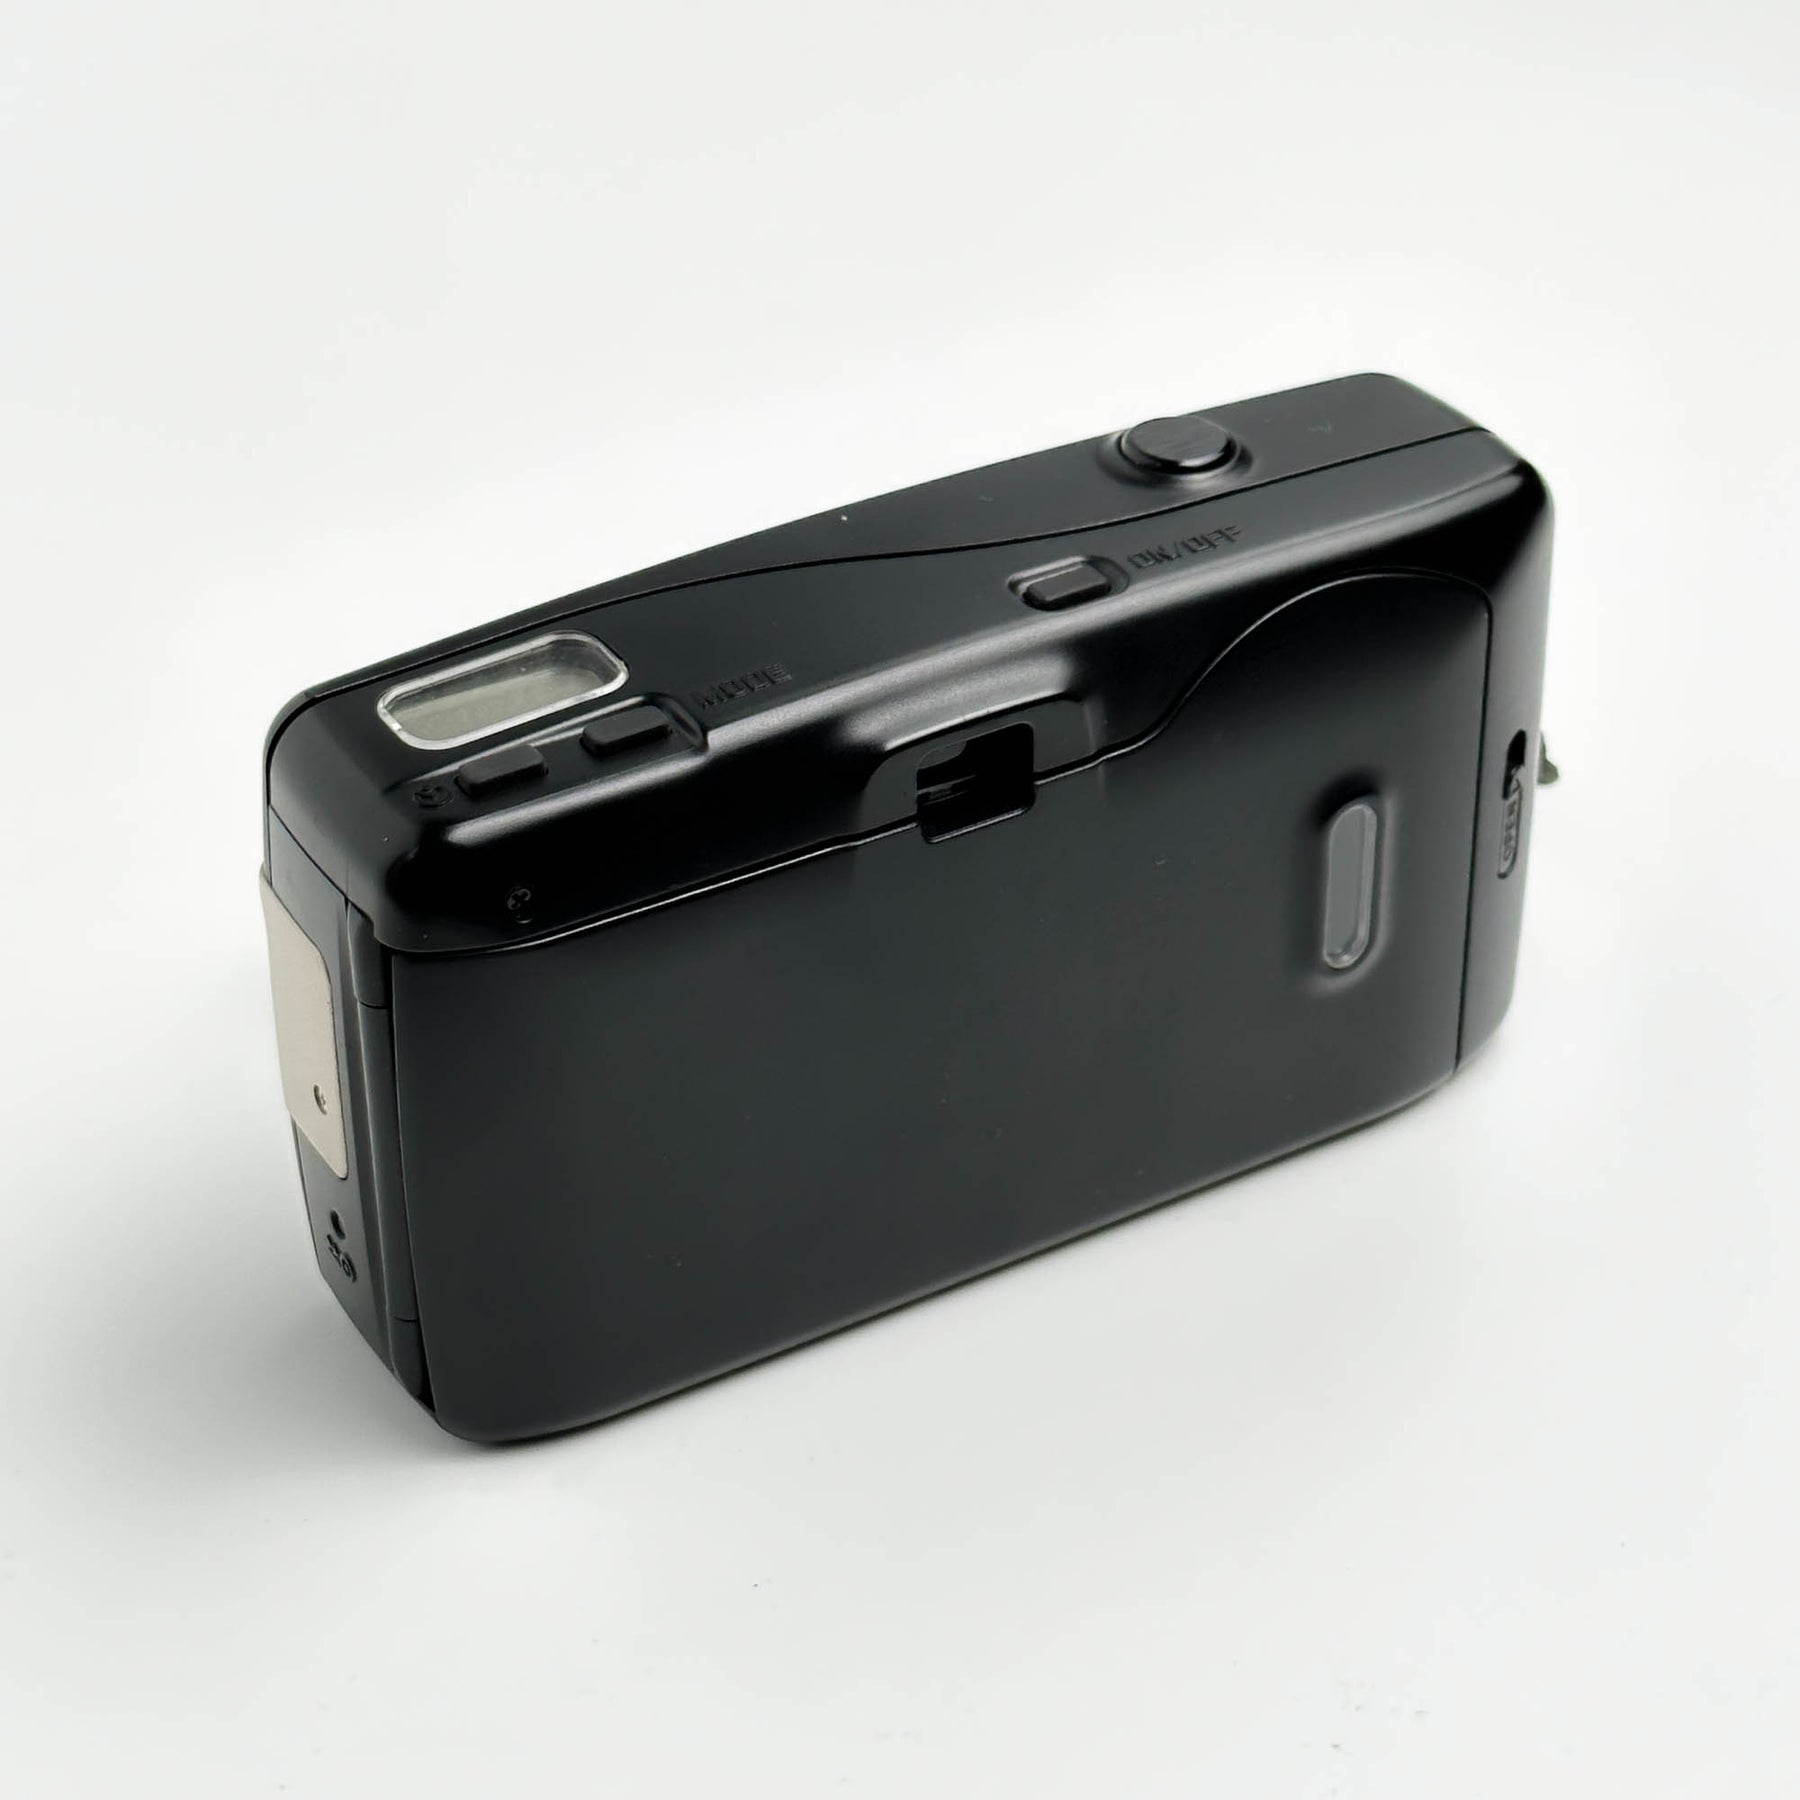 Analog Box N°71 - Leica Mini 3 32mm f/3.2